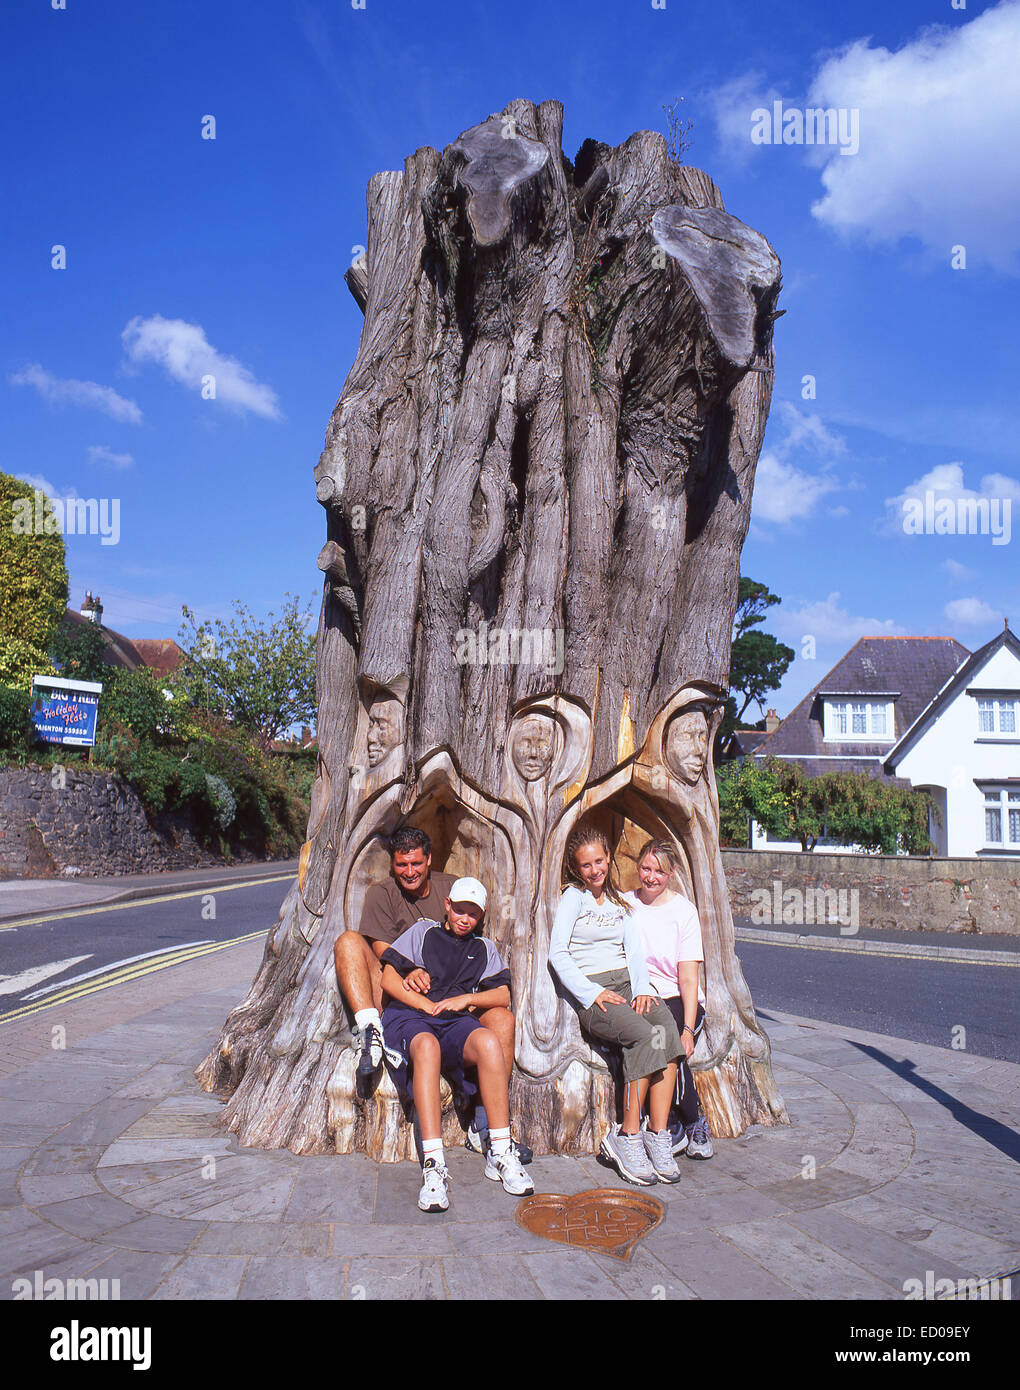 Assis dans la grande famille d'arbres sculptés, Paignton, Tor Bay, Devon, Angleterre, Royaume-Uni Banque D'Images